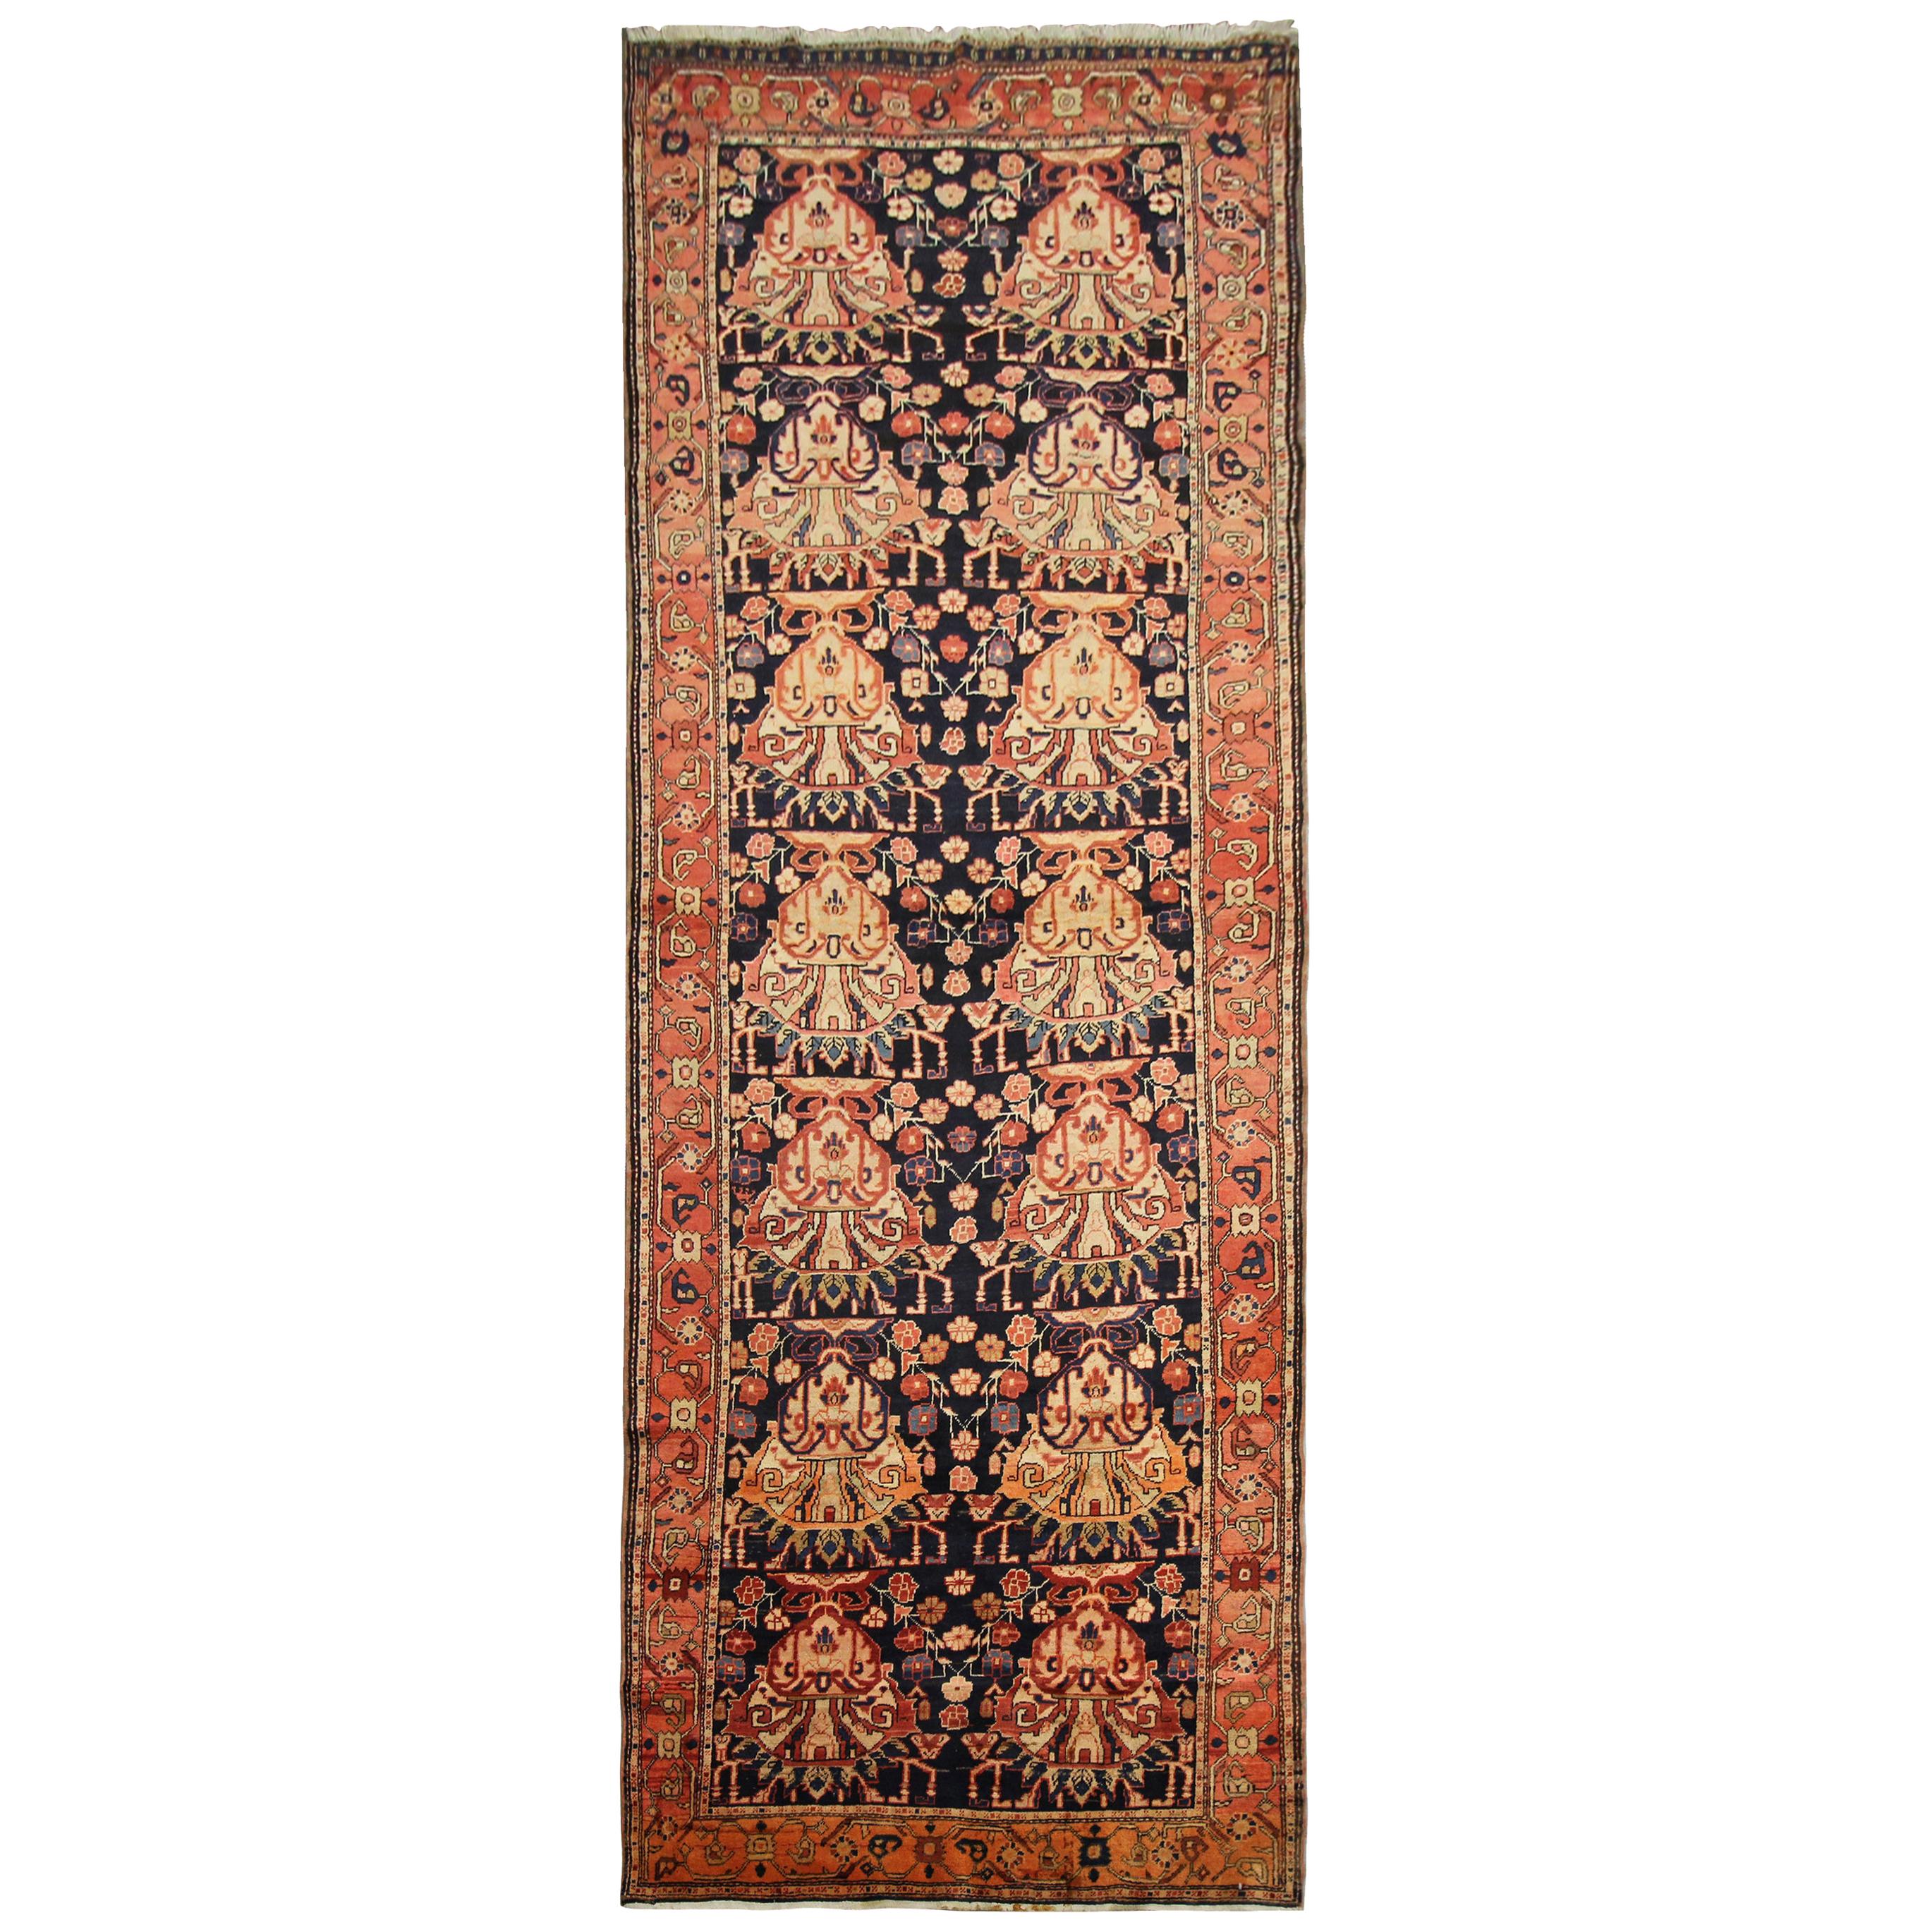 Tapis de couloir ancien tissé à la main, tapis de laine rouge traditionnel oriental